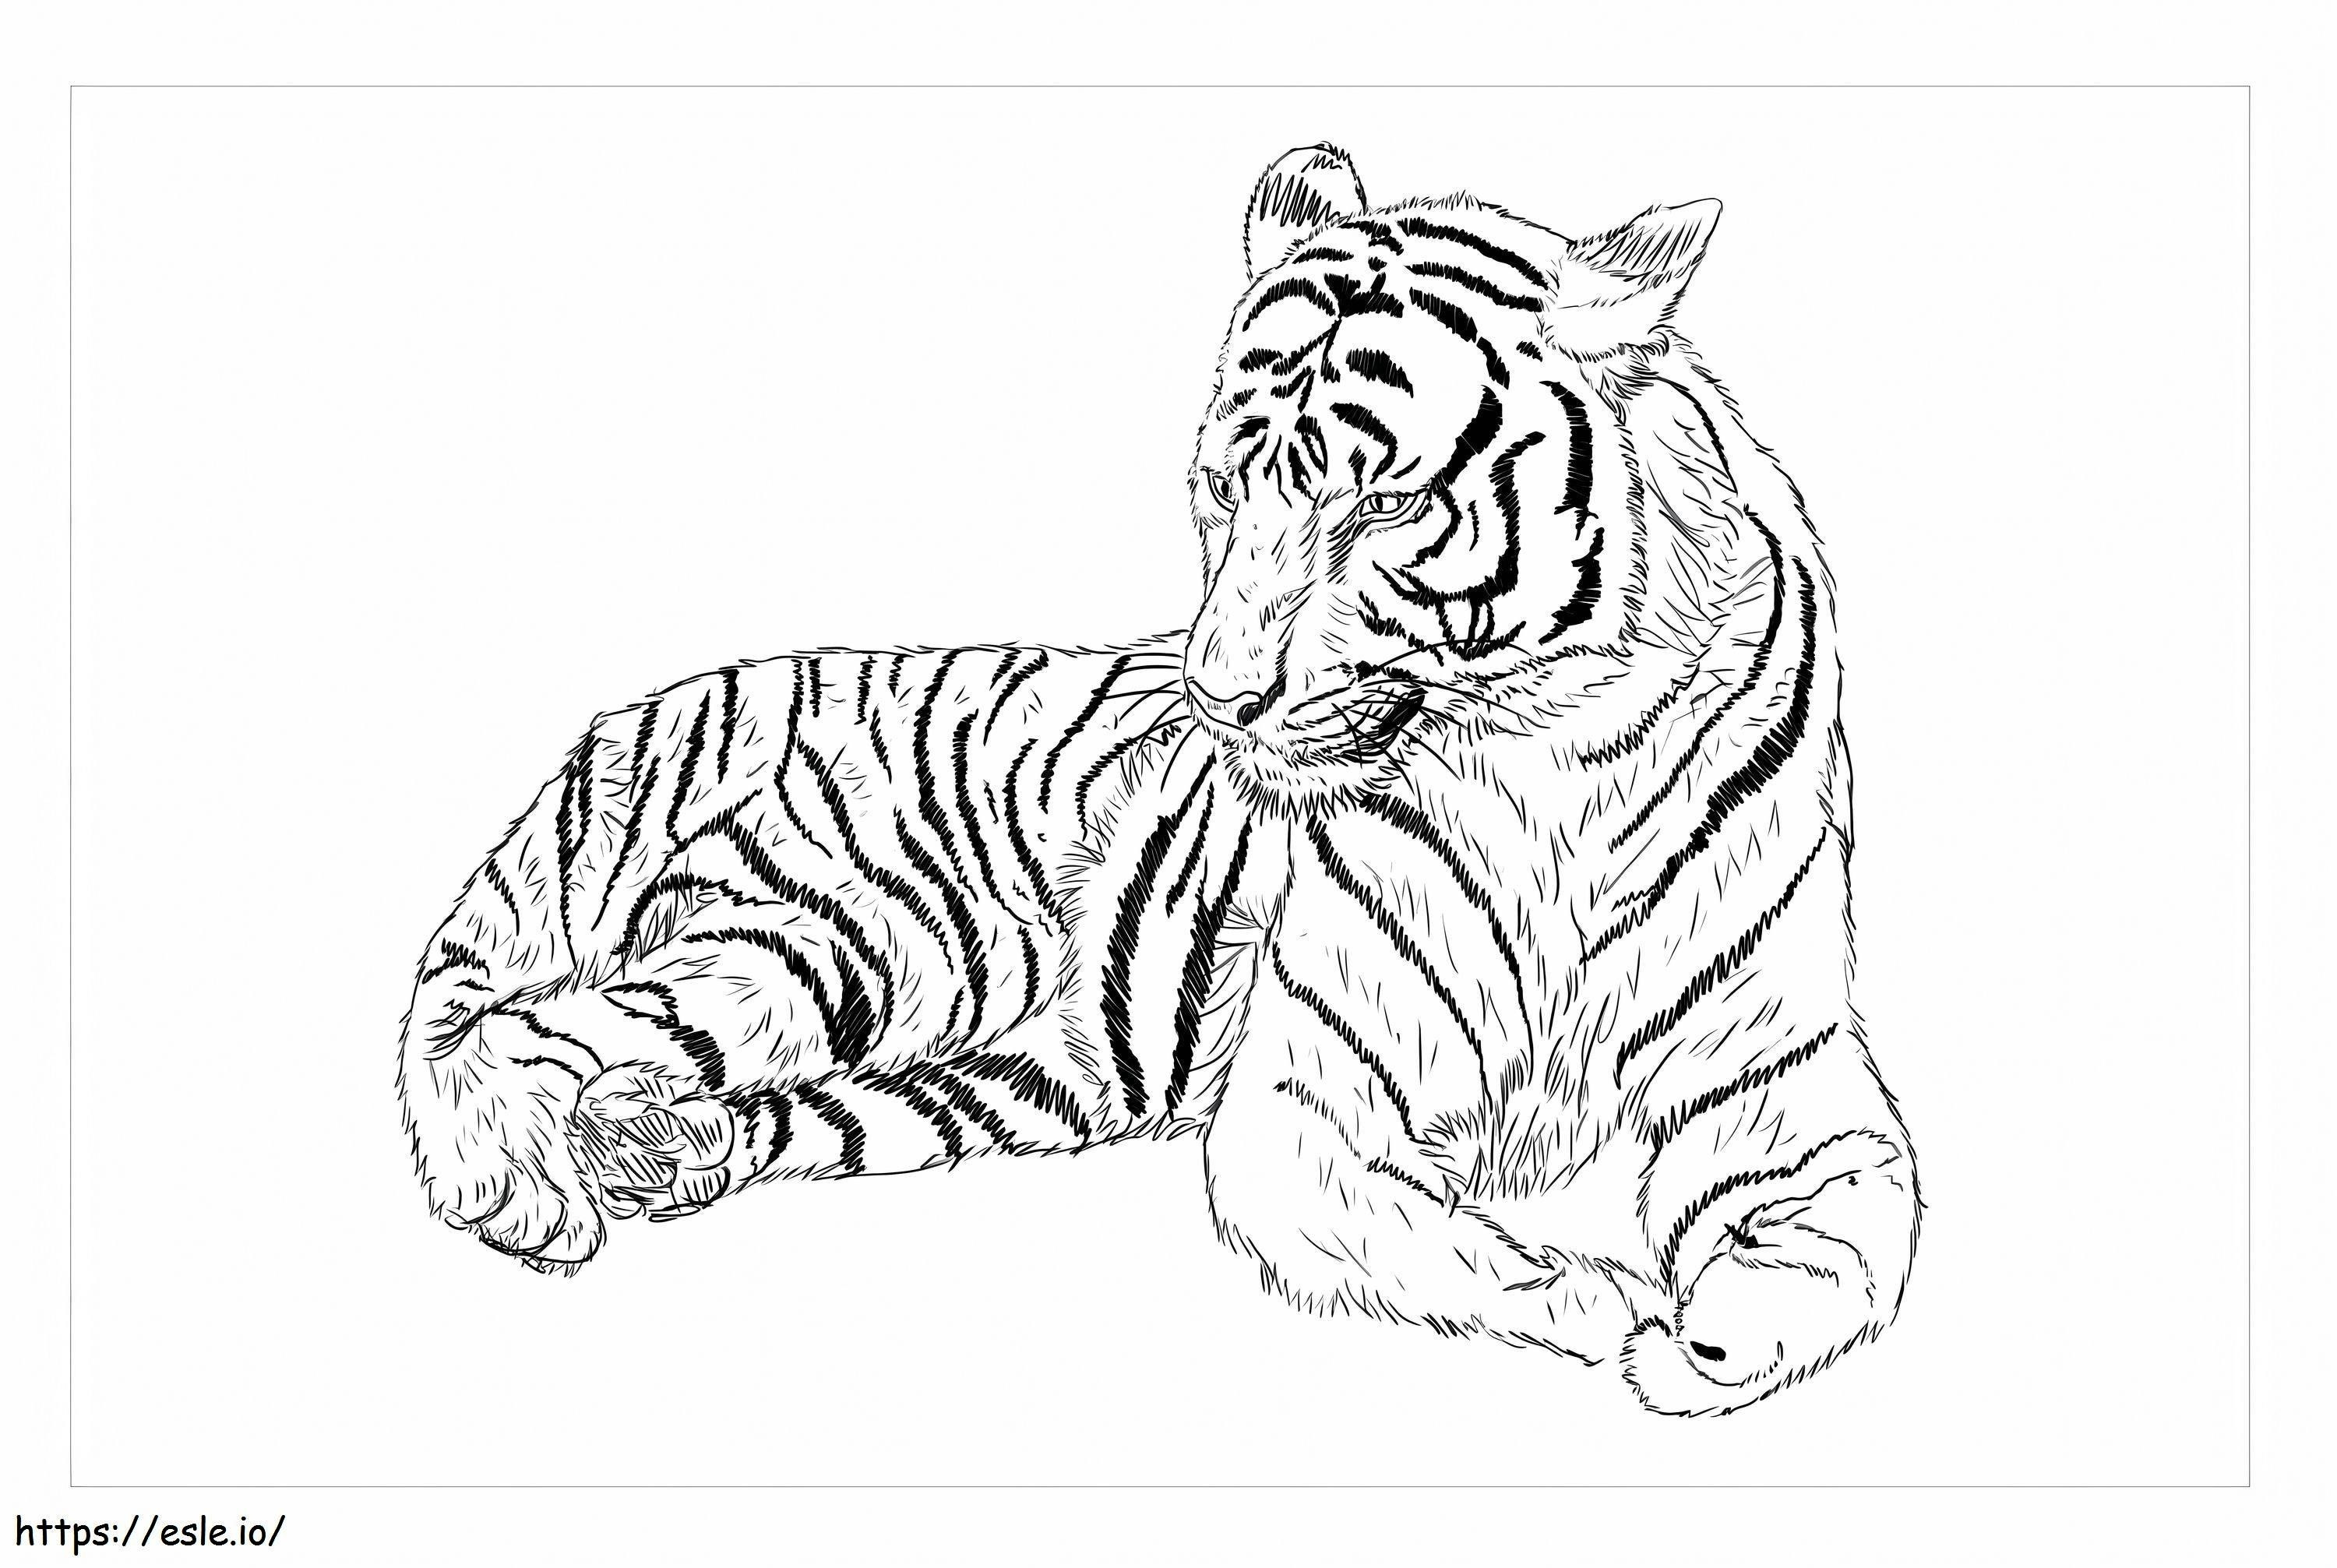 Tigre della Cina meridionale da colorare